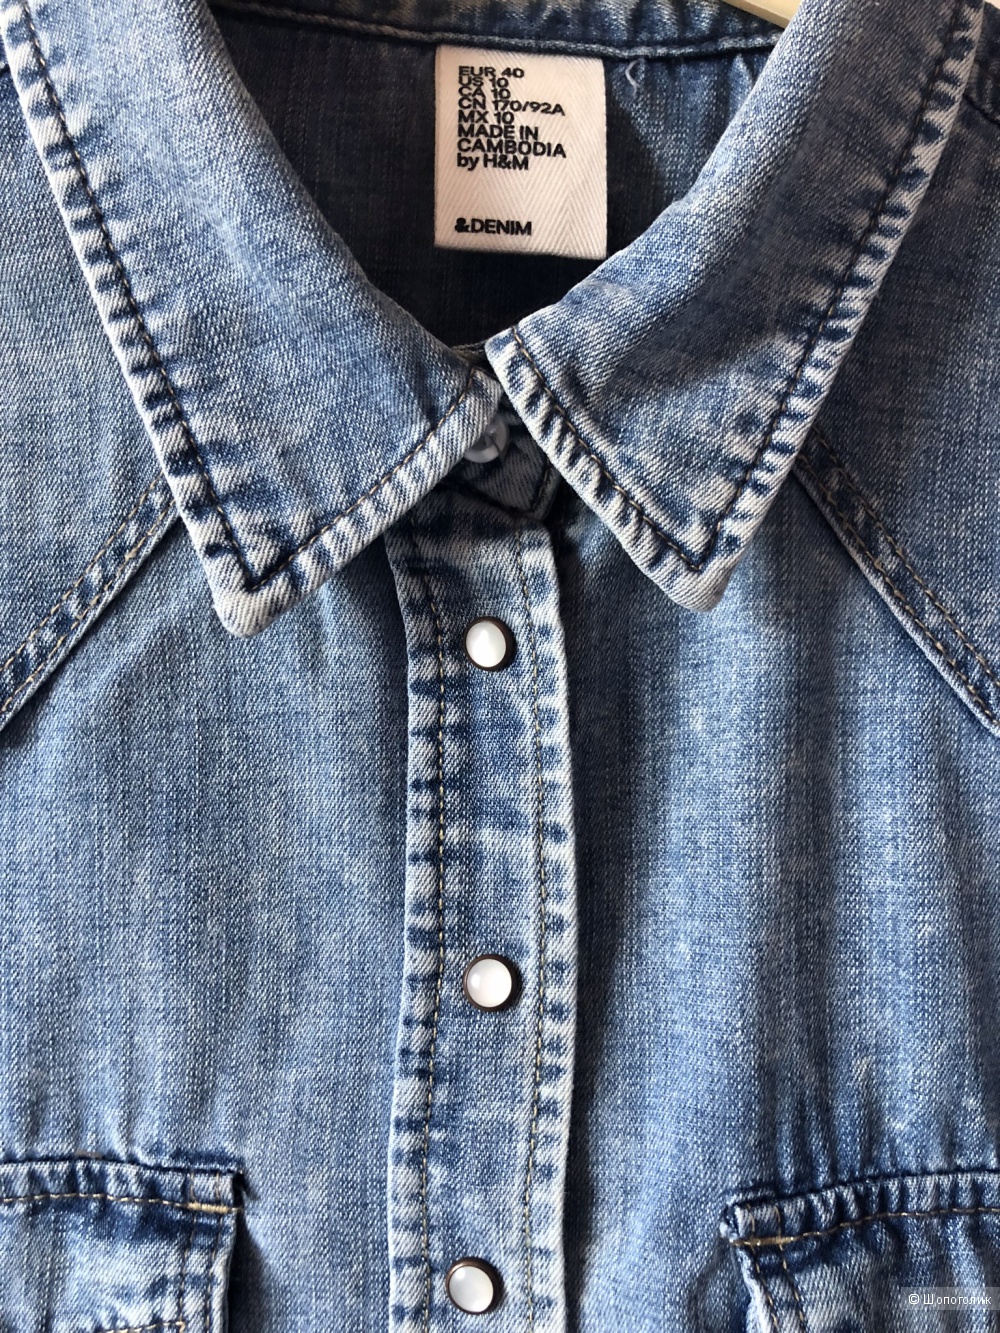 Рубашка женская джинсовая H&M, размер eur40.